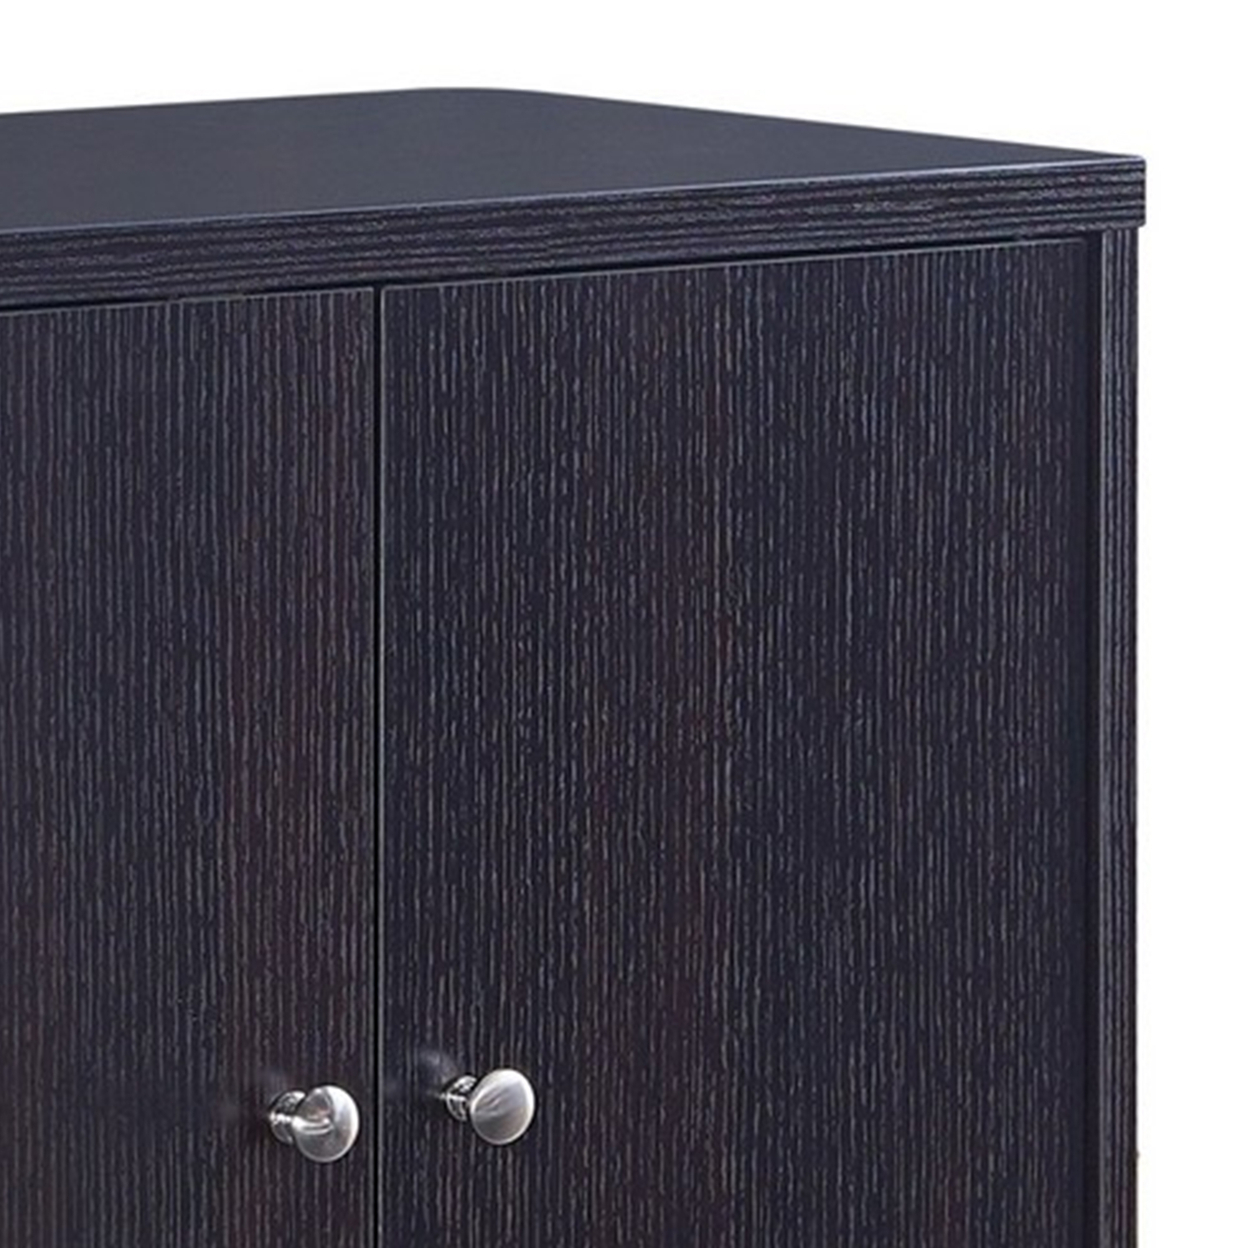 2 Double Door Wooden Storage Cabinet With Round Knobs, Dark Brown- Saltoro Sherpi